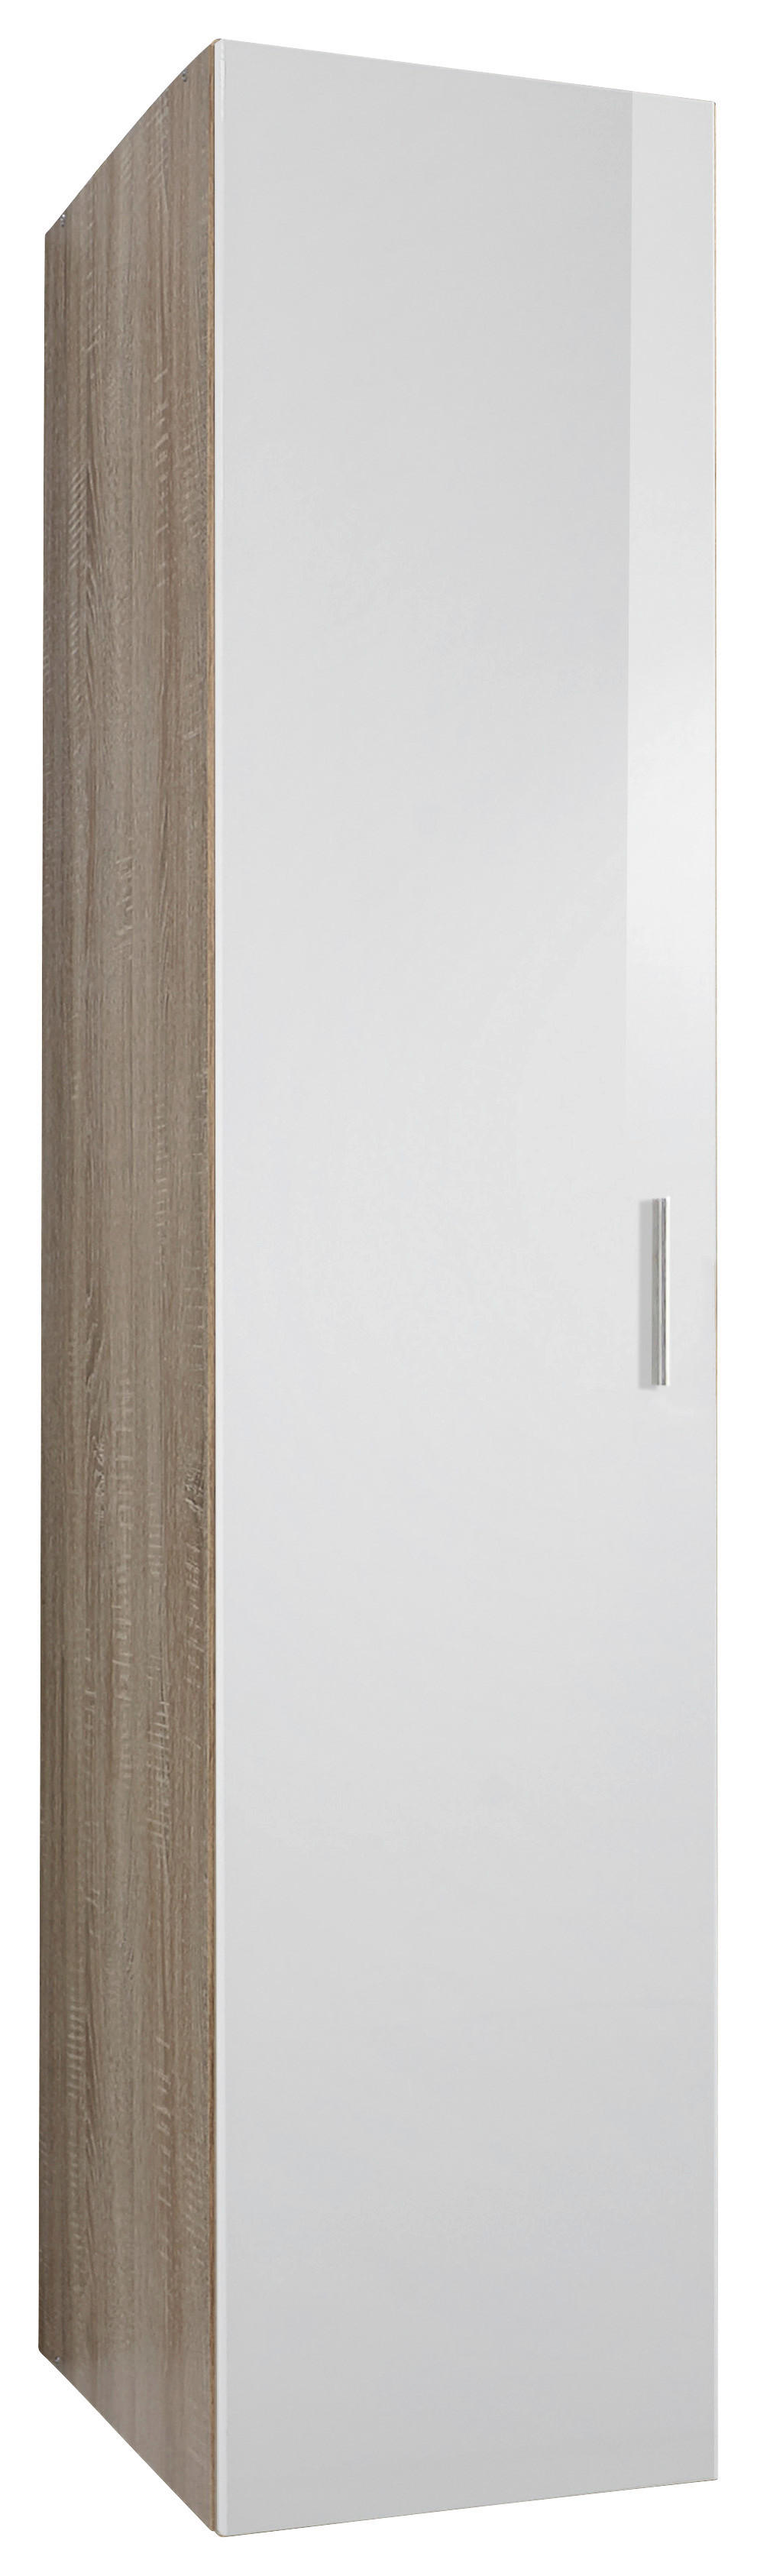 Xora SKŘÍŇ NA ODĚV, bílá, barvy dubu, 50/185/40 cm - bílá,barvy dubu - kompozitní dřevo